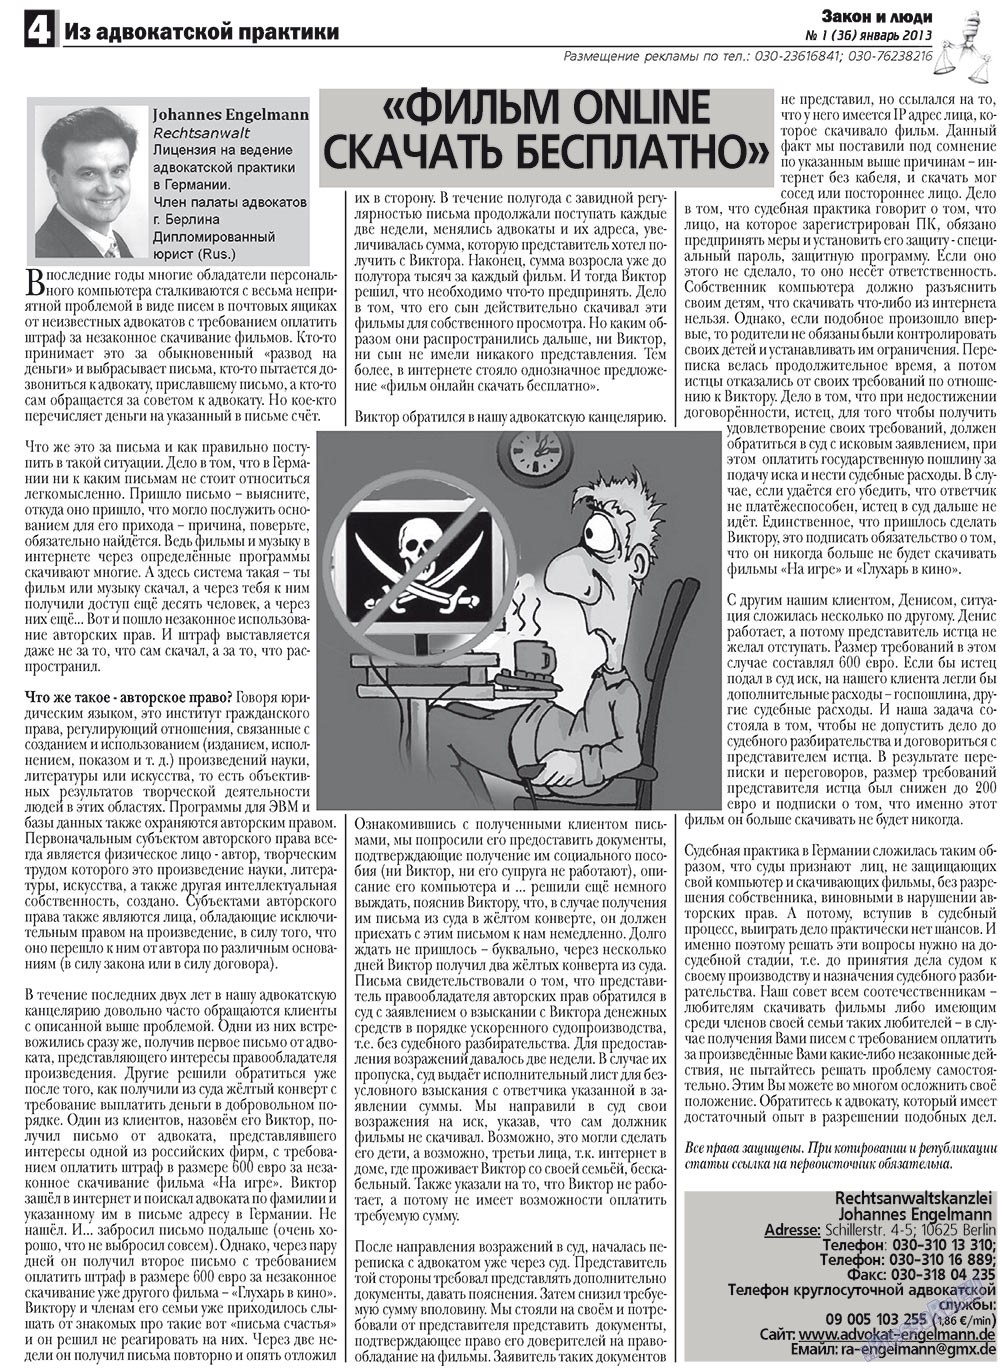 Закон и люди (газета). 2013 год, номер 1, стр. 4